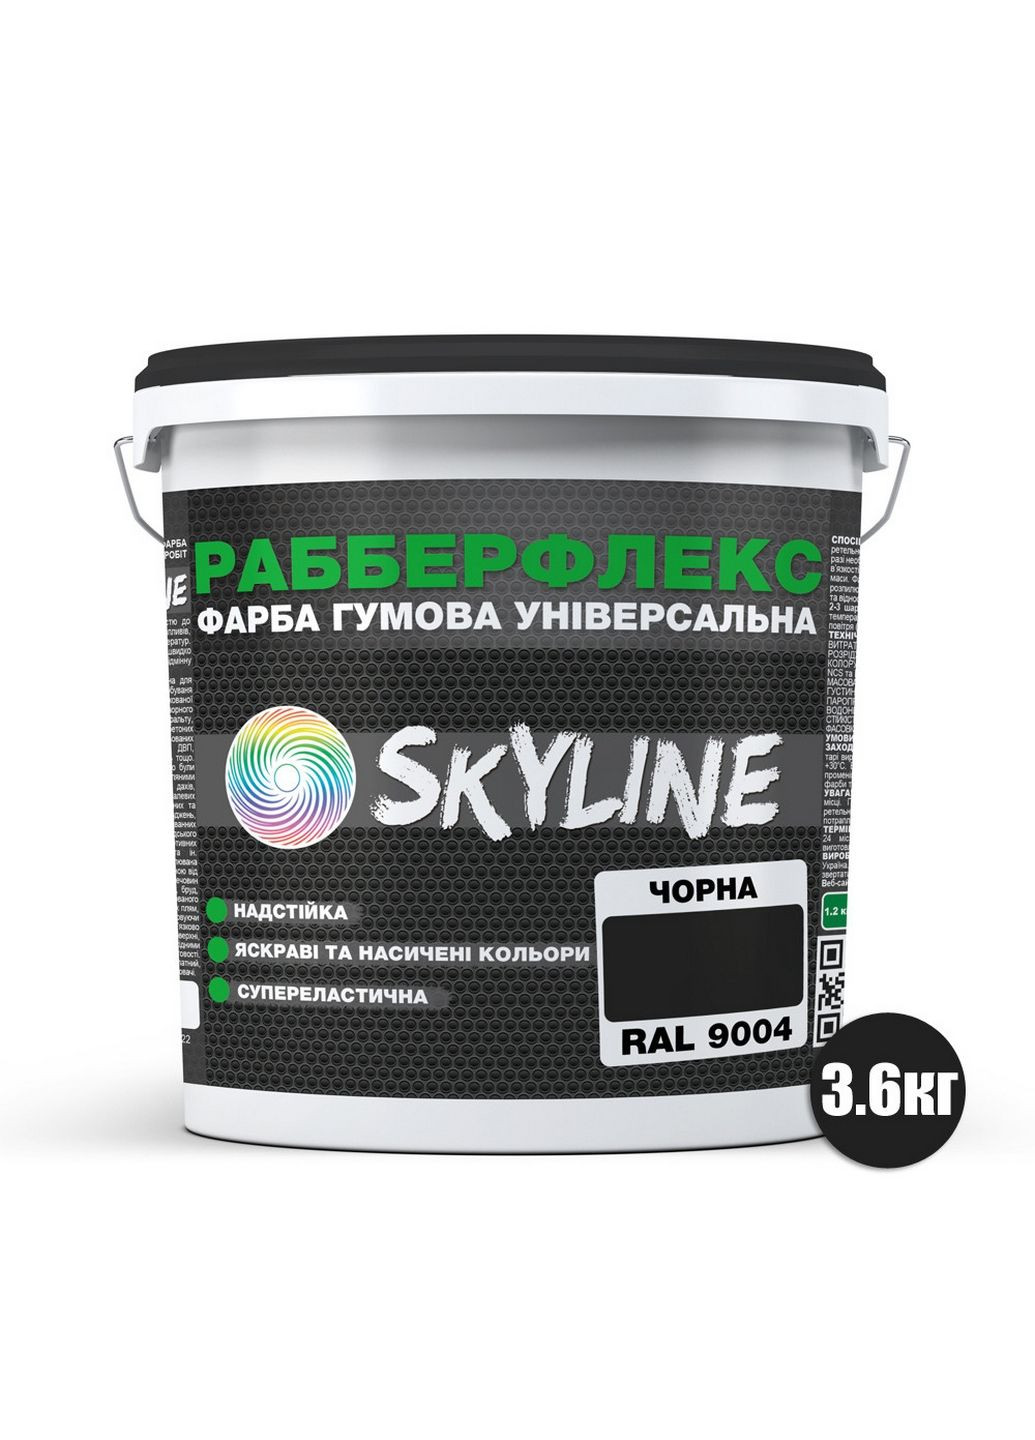 Надстійка фарба гумова супереластична «РабберФлекс» 3,6 кг SkyLine (283326585)